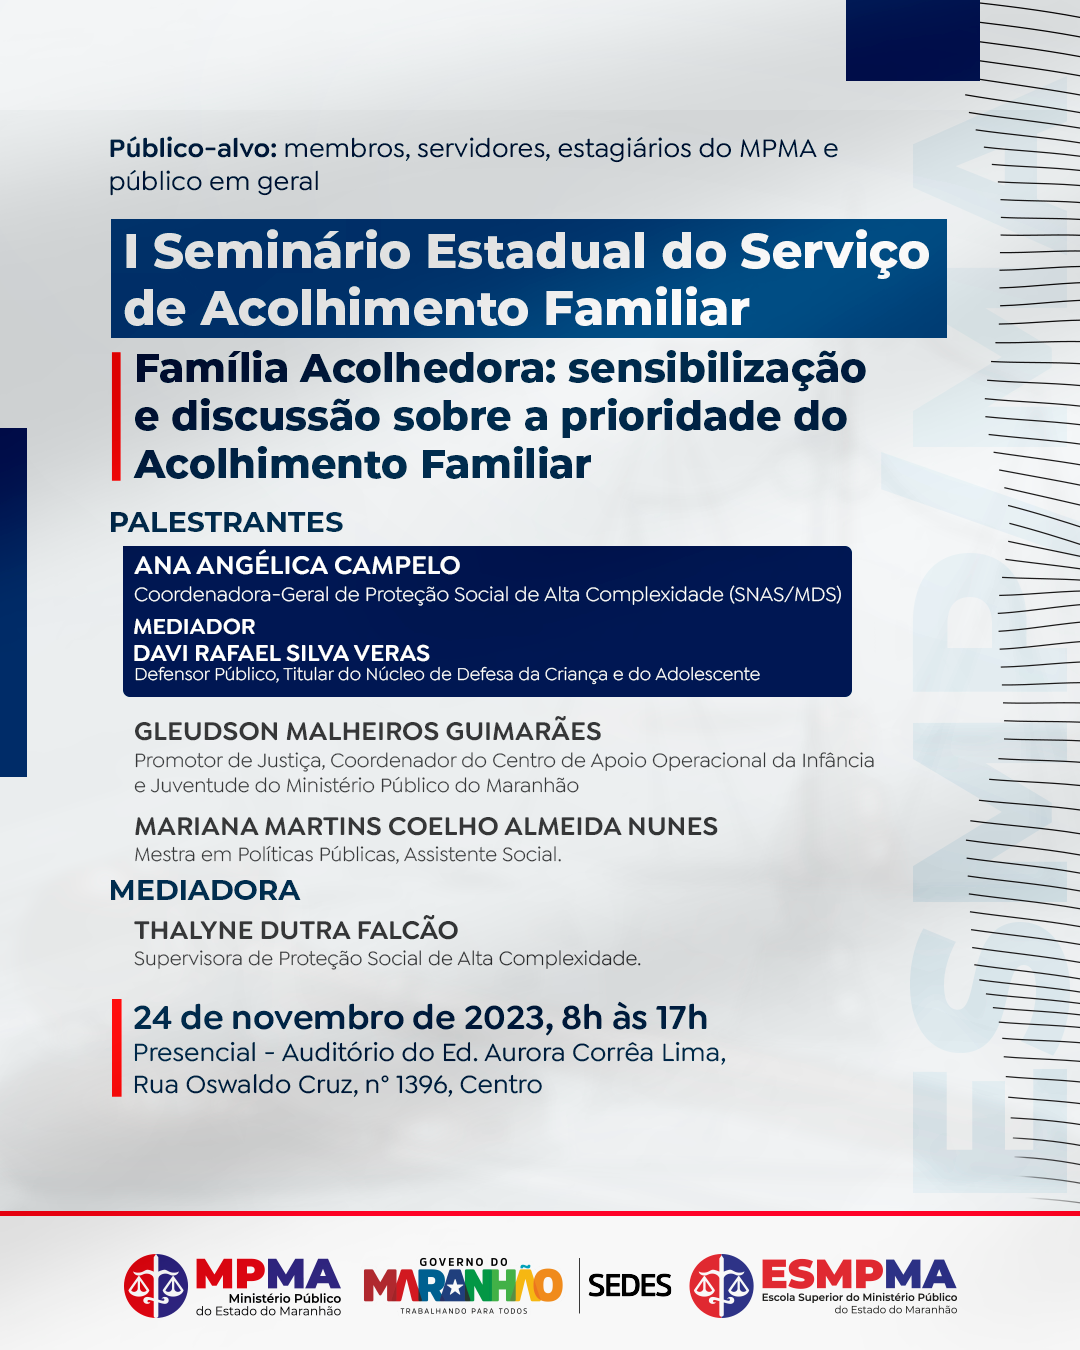 I Seminário Estadual Família Acolhedora: sensibilização e discussão sobre a prioridade do Acolhimento Familiar